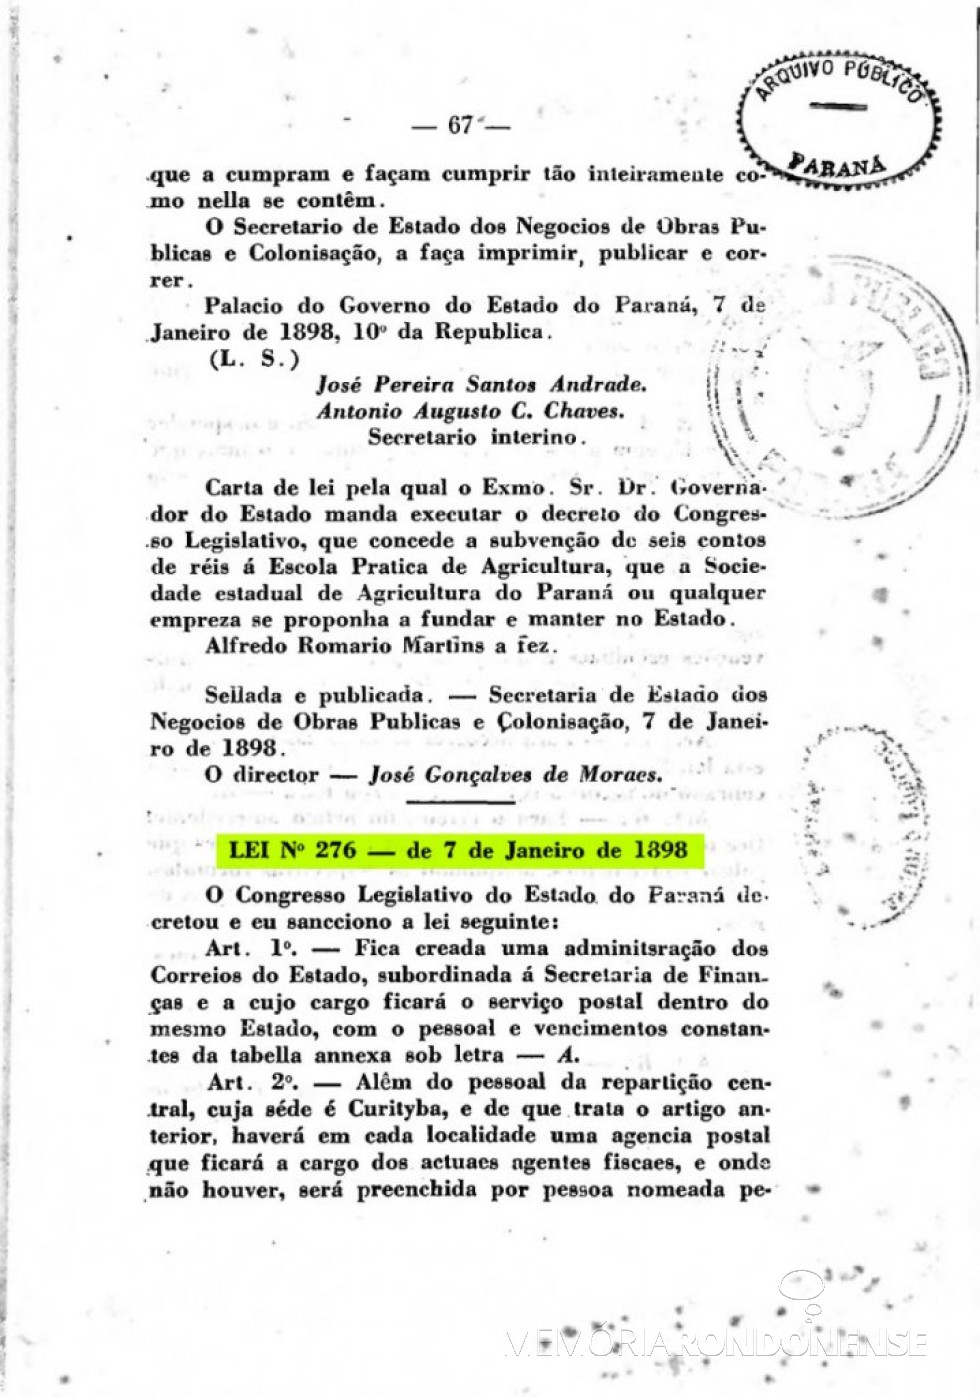 Página 1 da publicação da Lei nº 276/1898, que criou a Administração dos Correios no Paraná. 
Imagem: Acervo Arquivo Público do Paraná - FOTO 2 - 